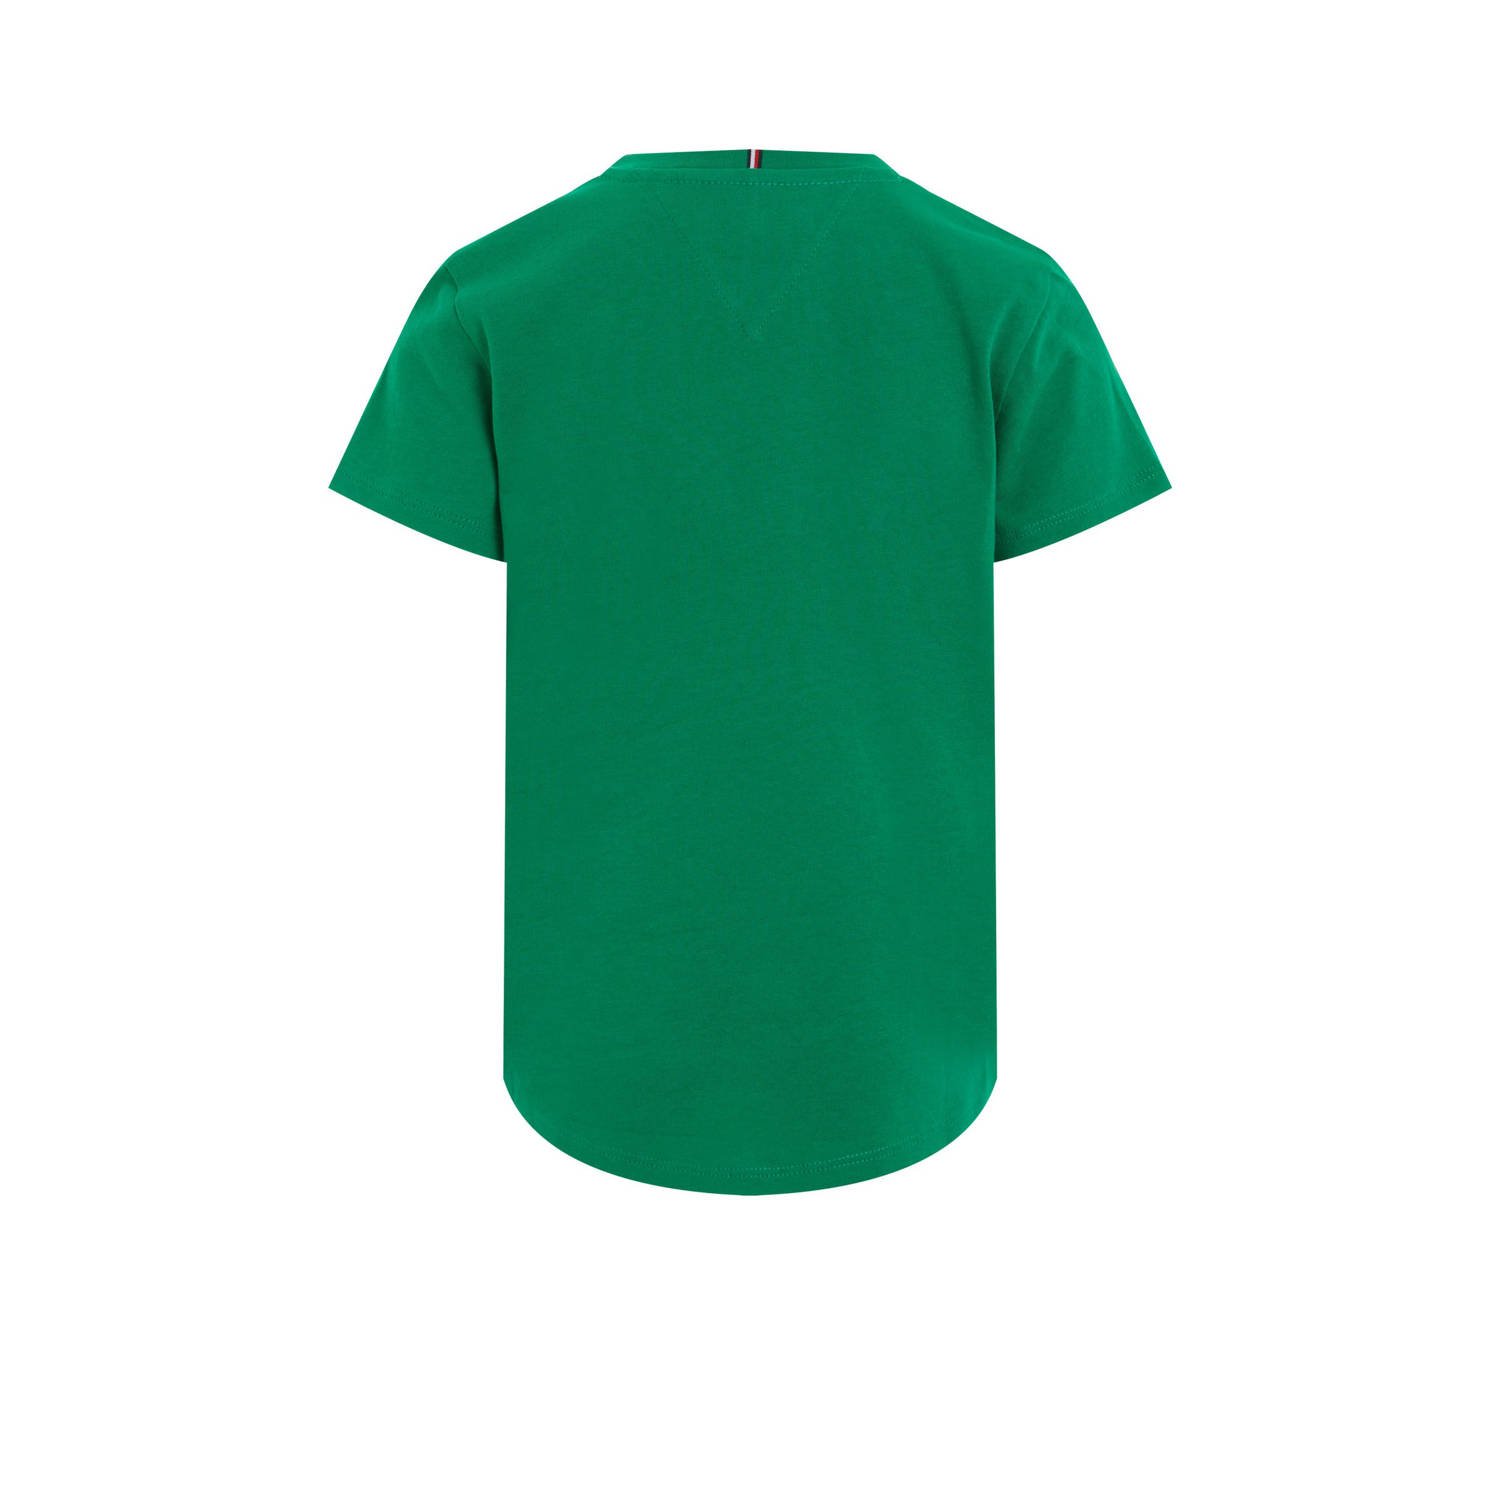 Tommy Hilfiger T-shirt met logo groen